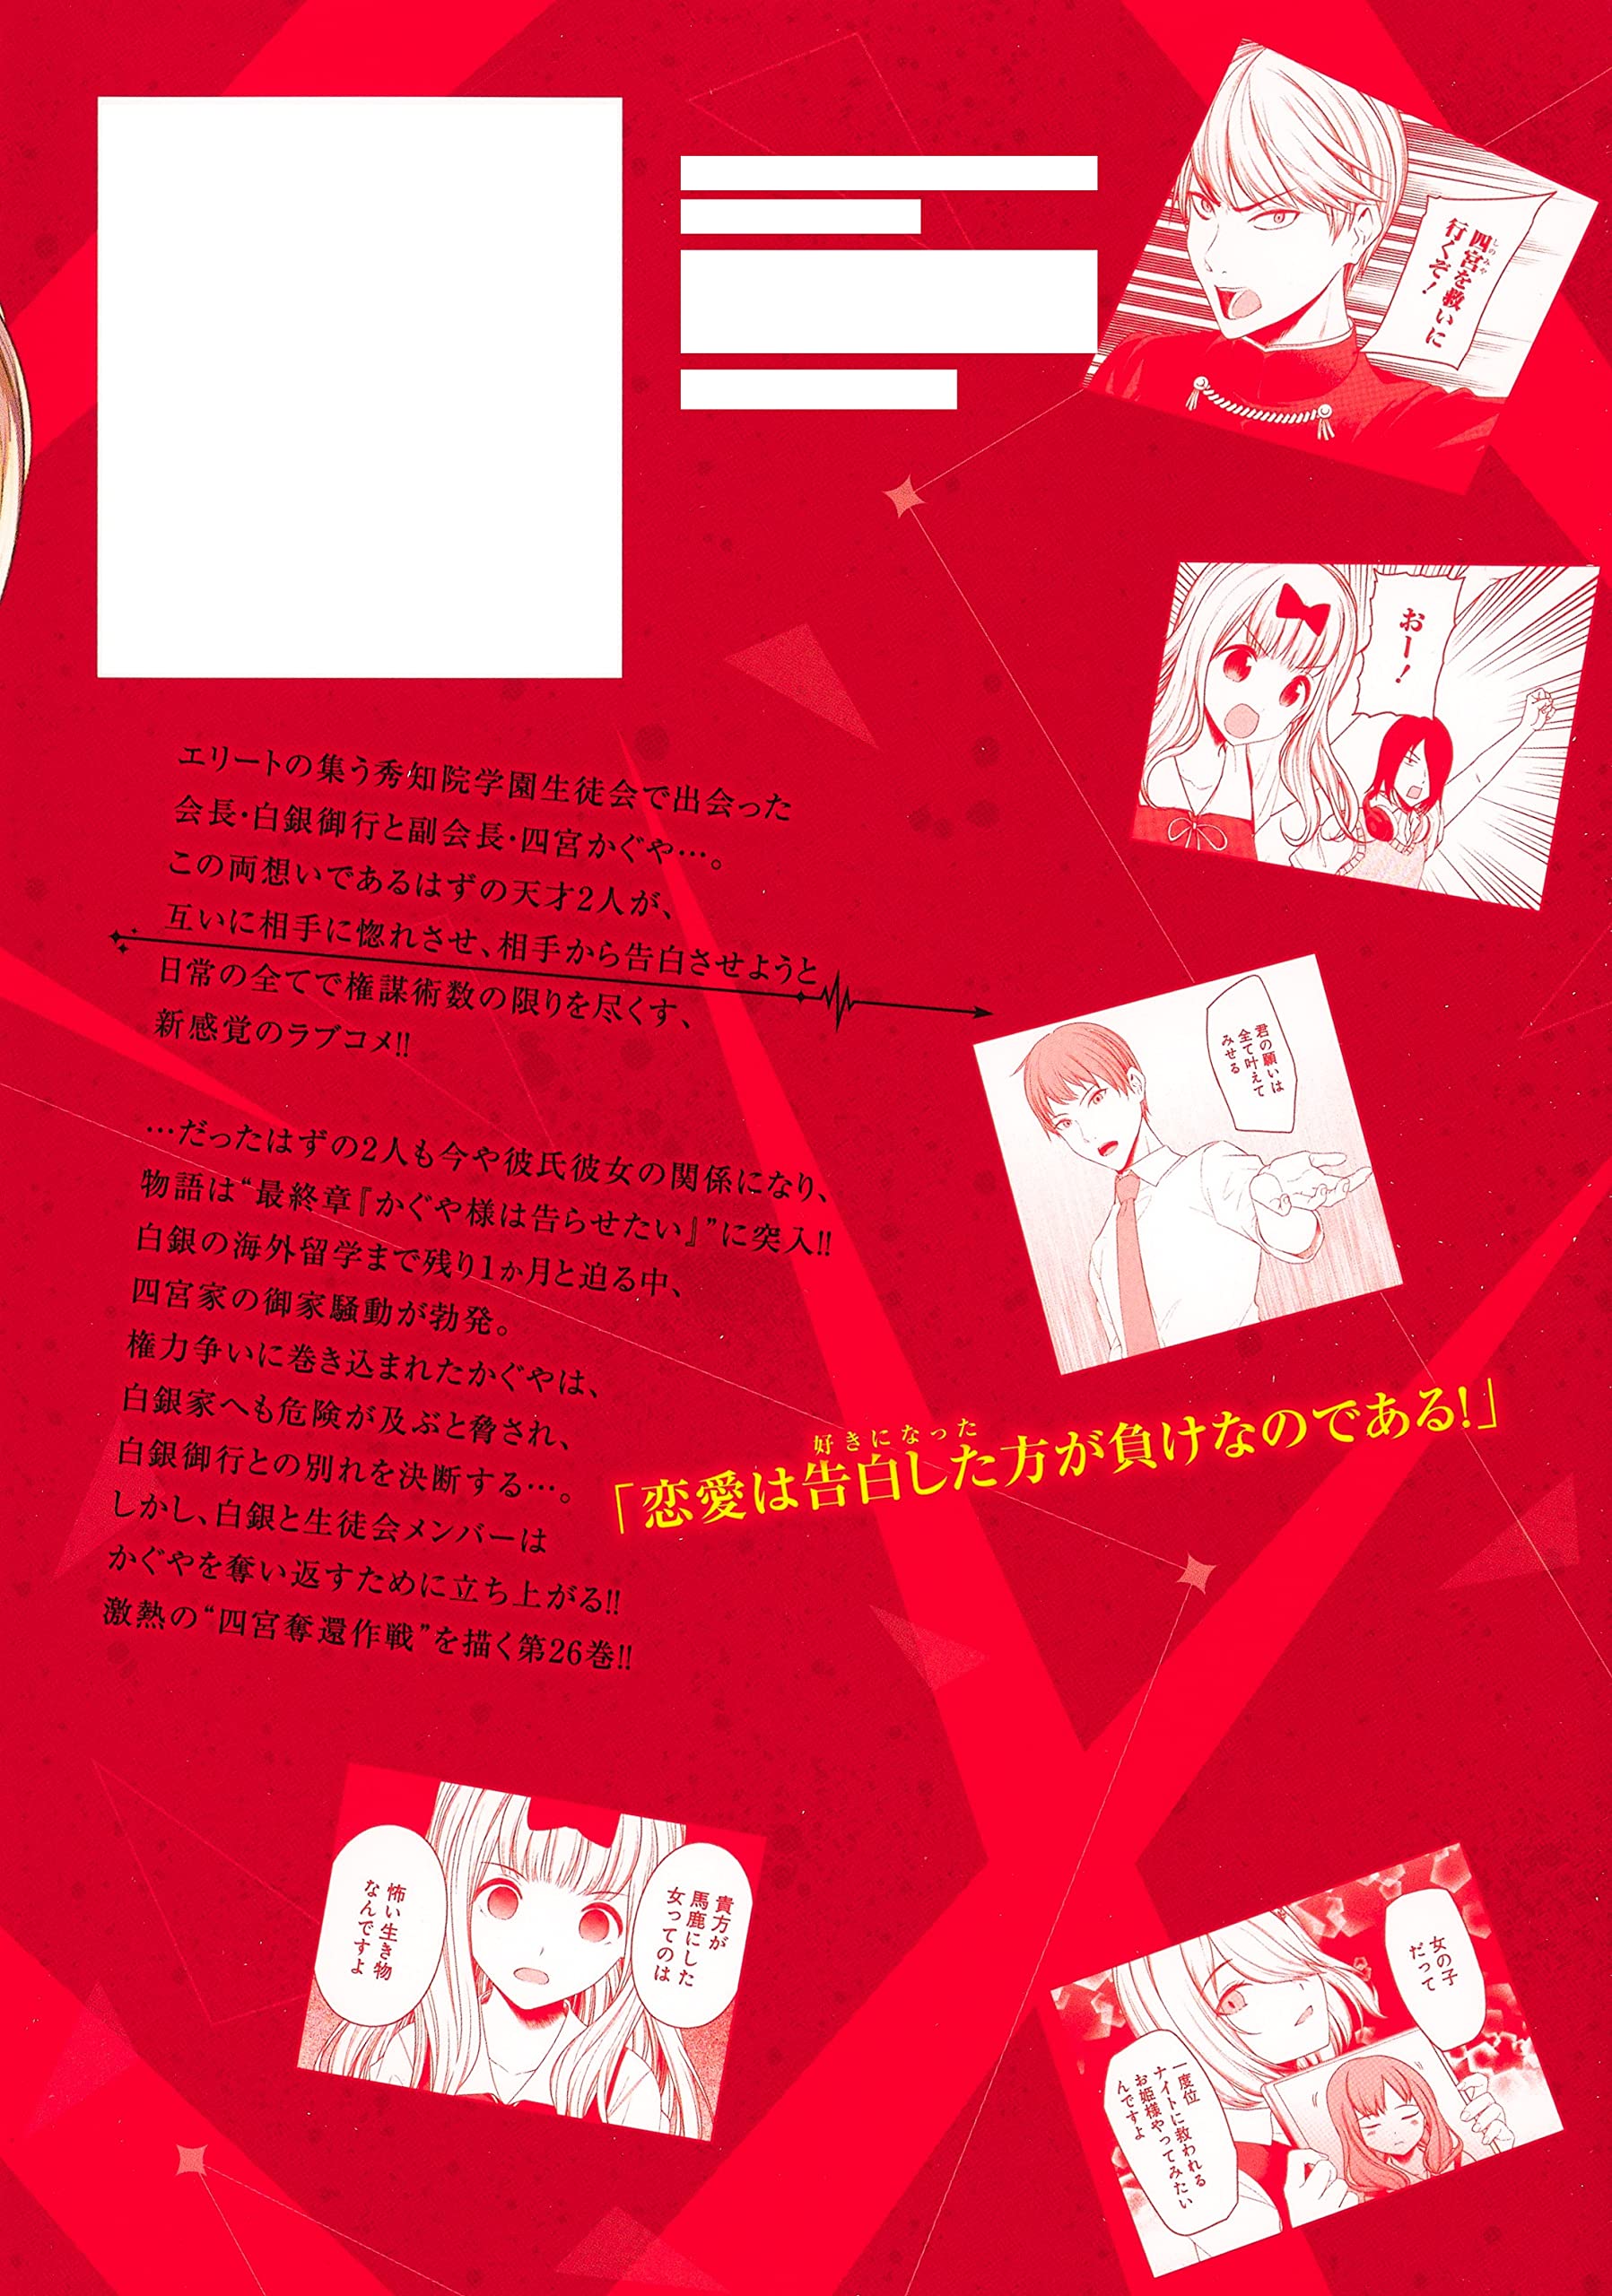 Manga VO Kaguya-sama wa Kokurasetai - Tensai-tachi no Renai Zunousen jp  Vol.26 ( AKASAKA Aka AKASAKA Aka ) かぐや様は告らせたい～天才たちの恋愛頭脳戦～ - Manga news